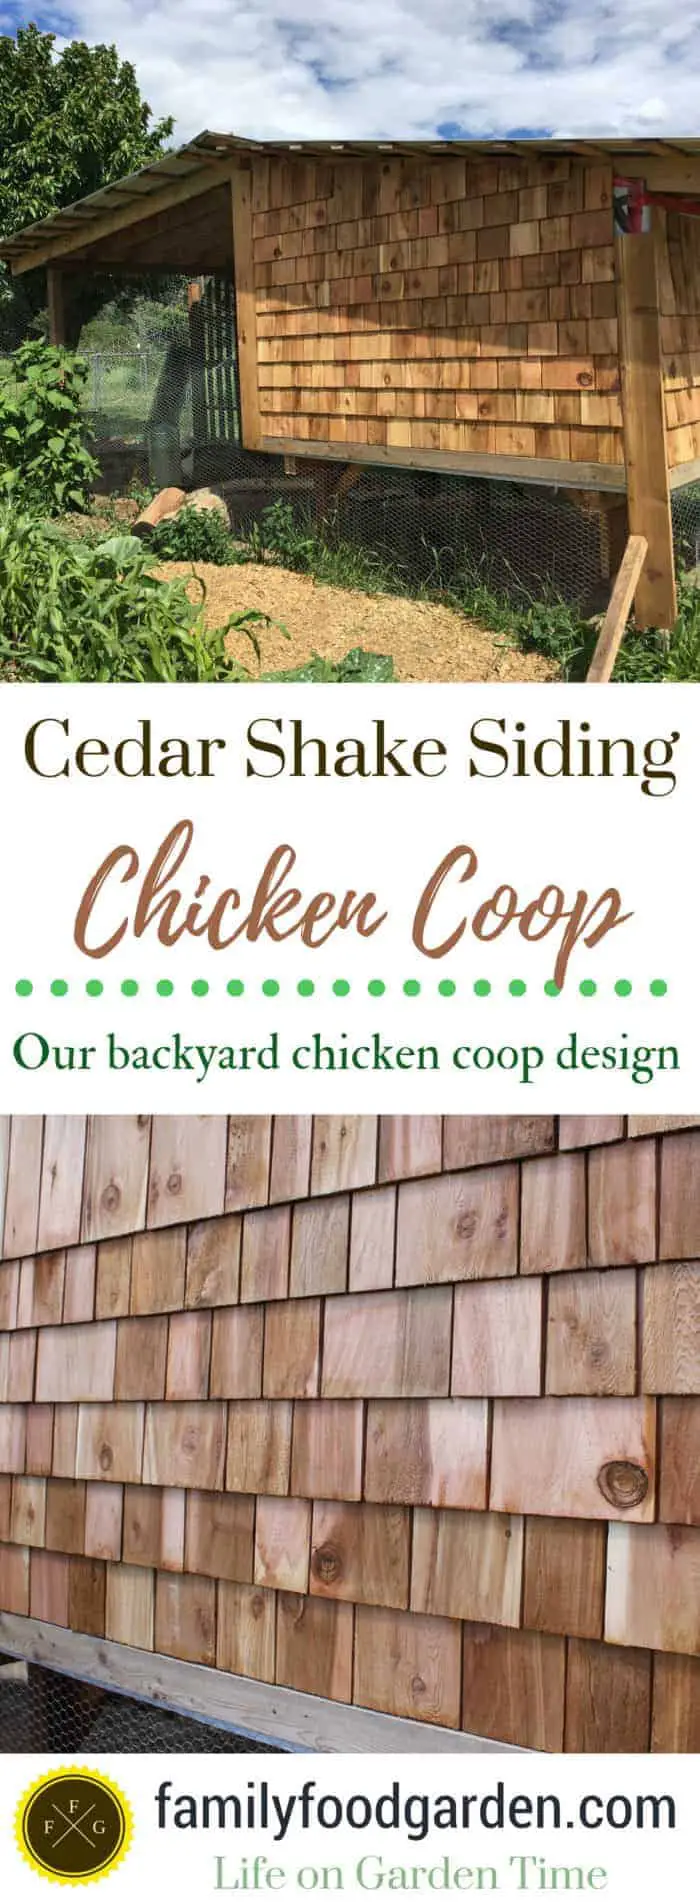 FamilyFoodGarden: Cedar Shake Siding Chicken Coop